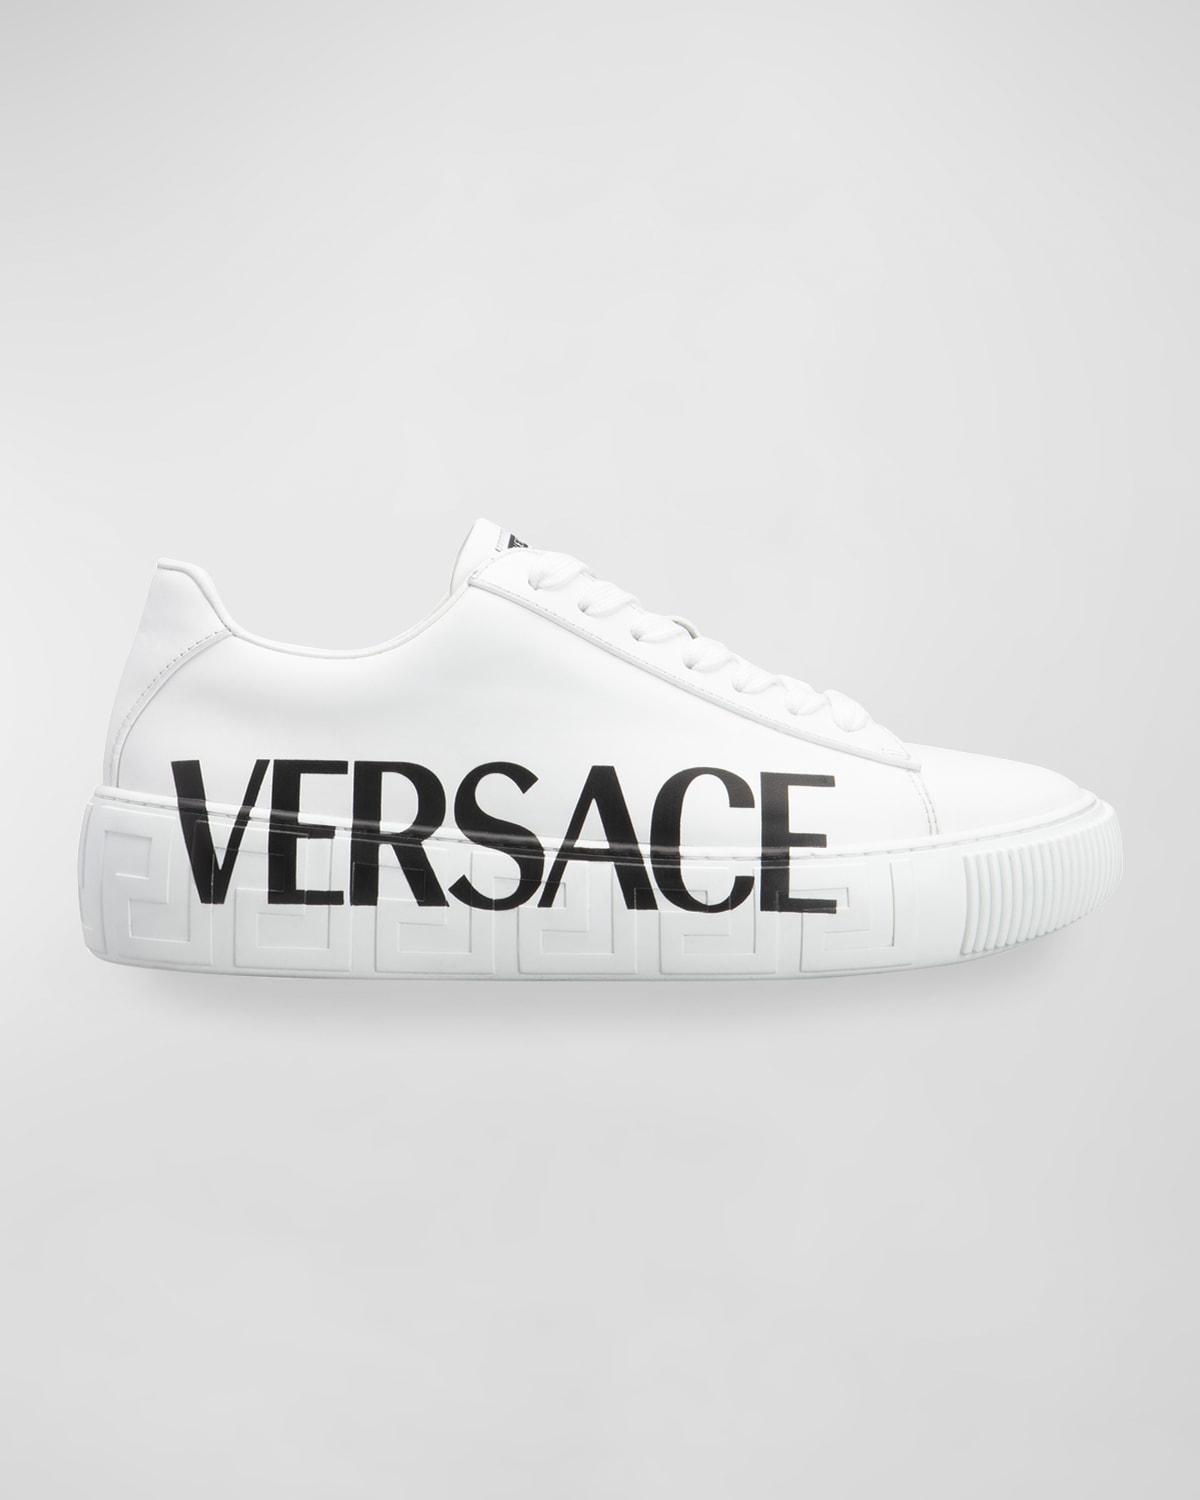 Versace Shoes | Neiman Marcus